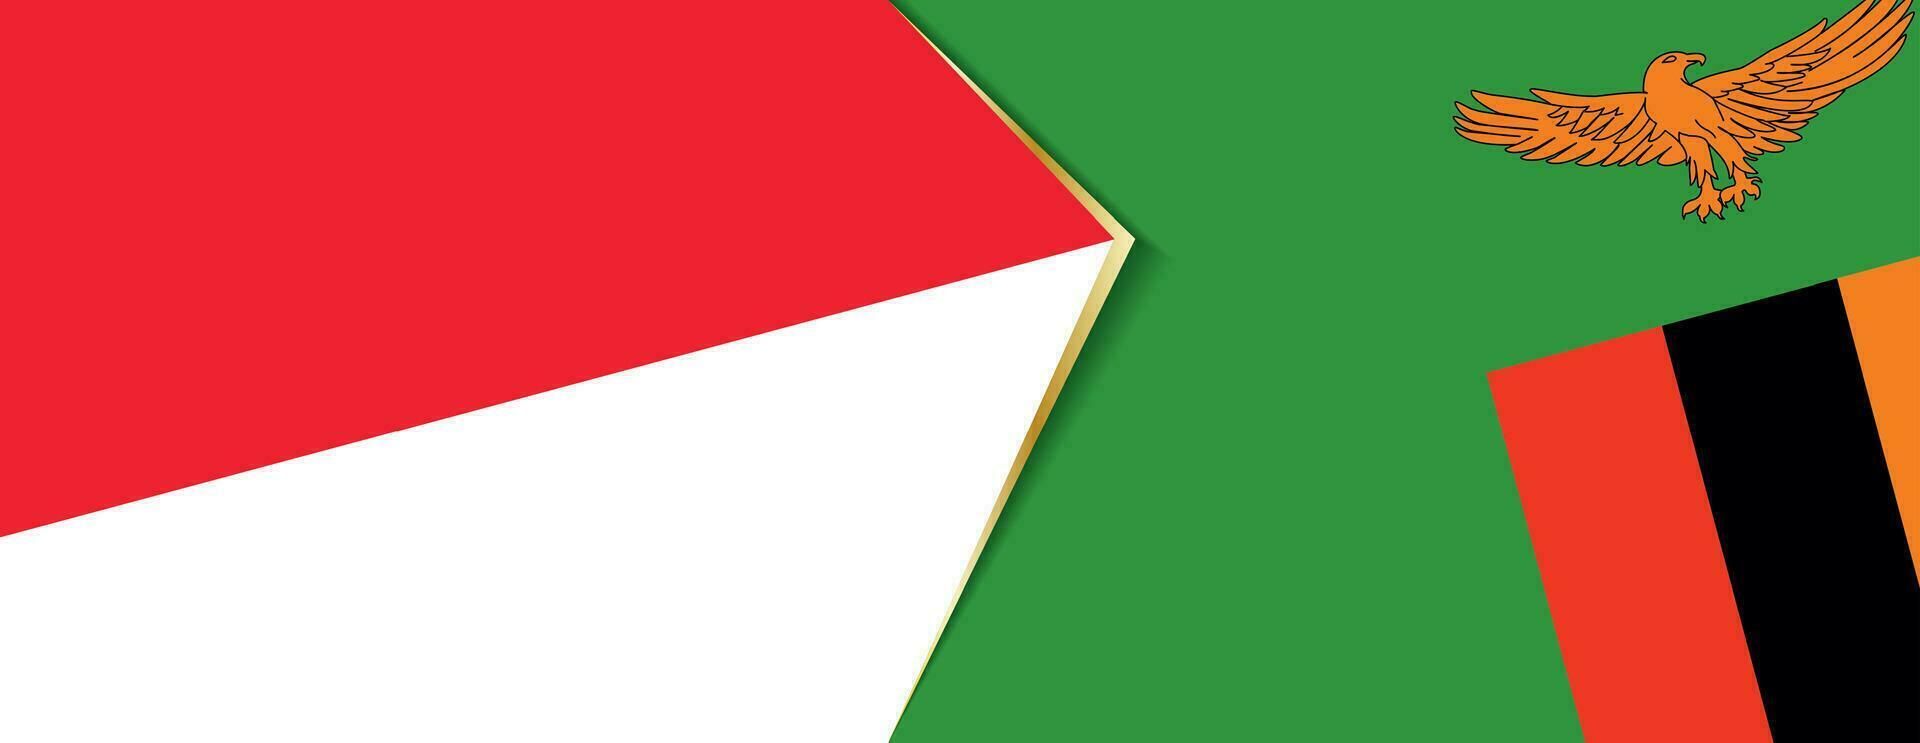 Indonesia y Zambia banderas, dos vector banderas